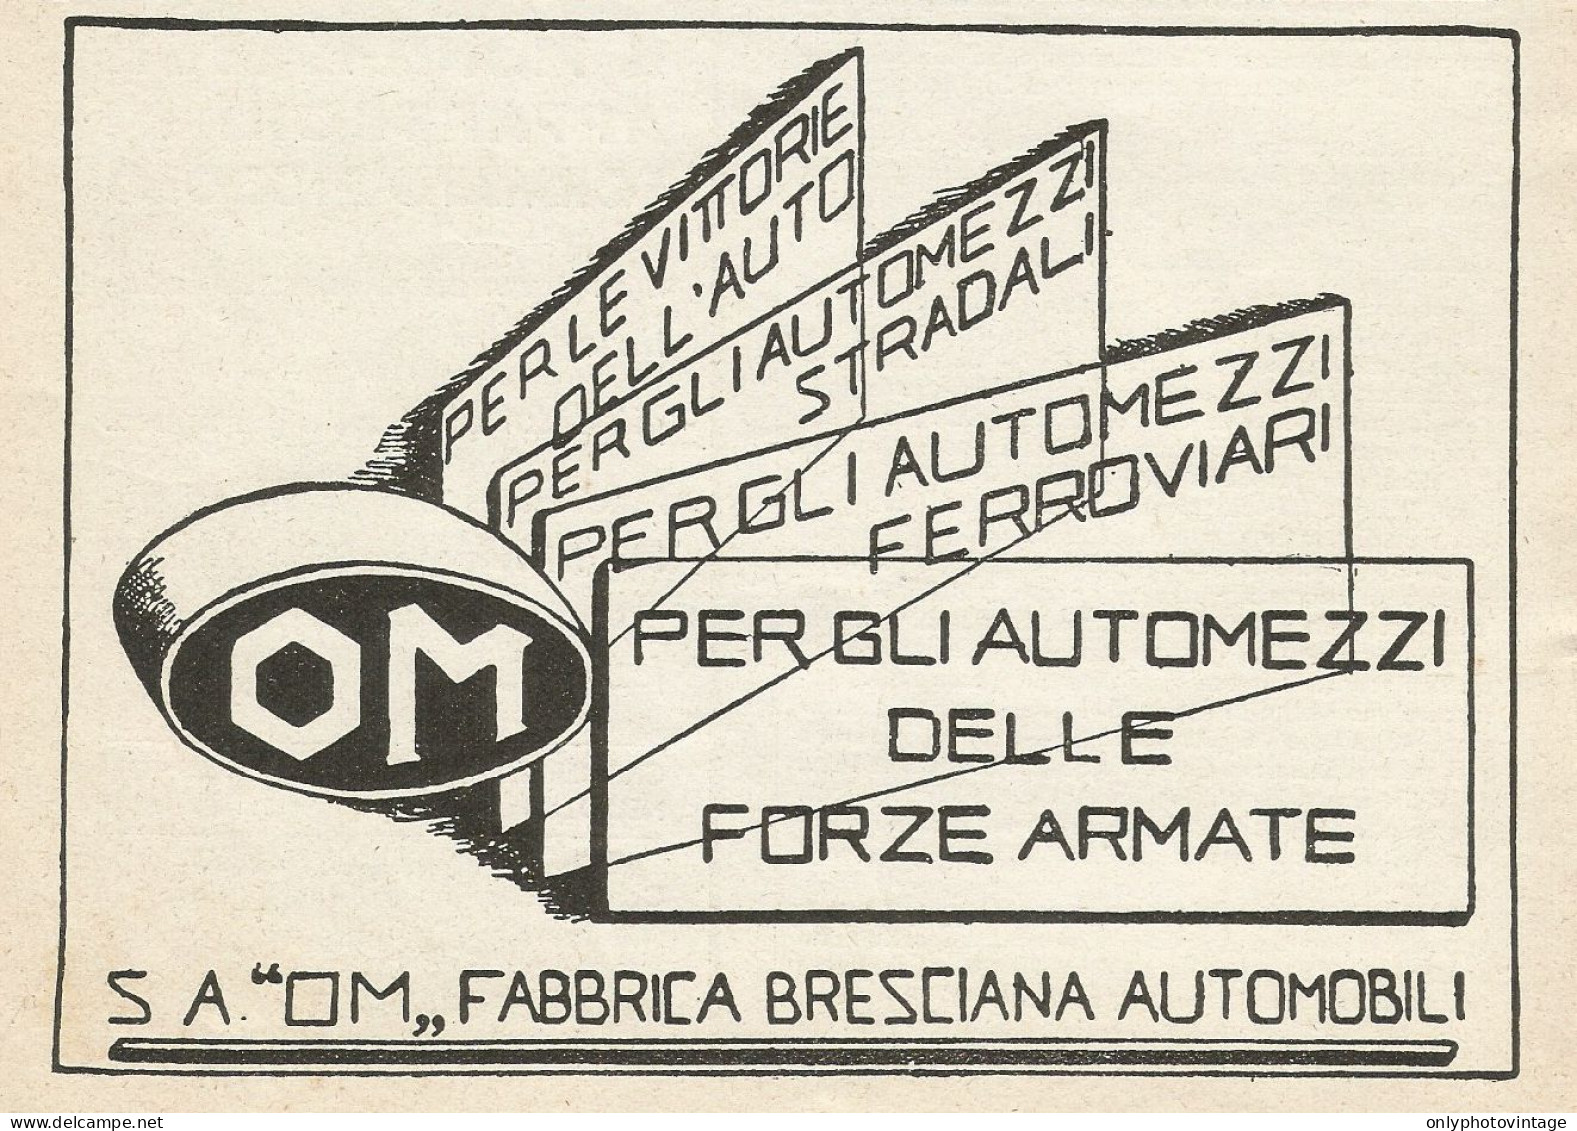 OM Per Gli Automezzi Delle Forze Armate - Pubblicità 1937 - Advertising - Pubblicitari